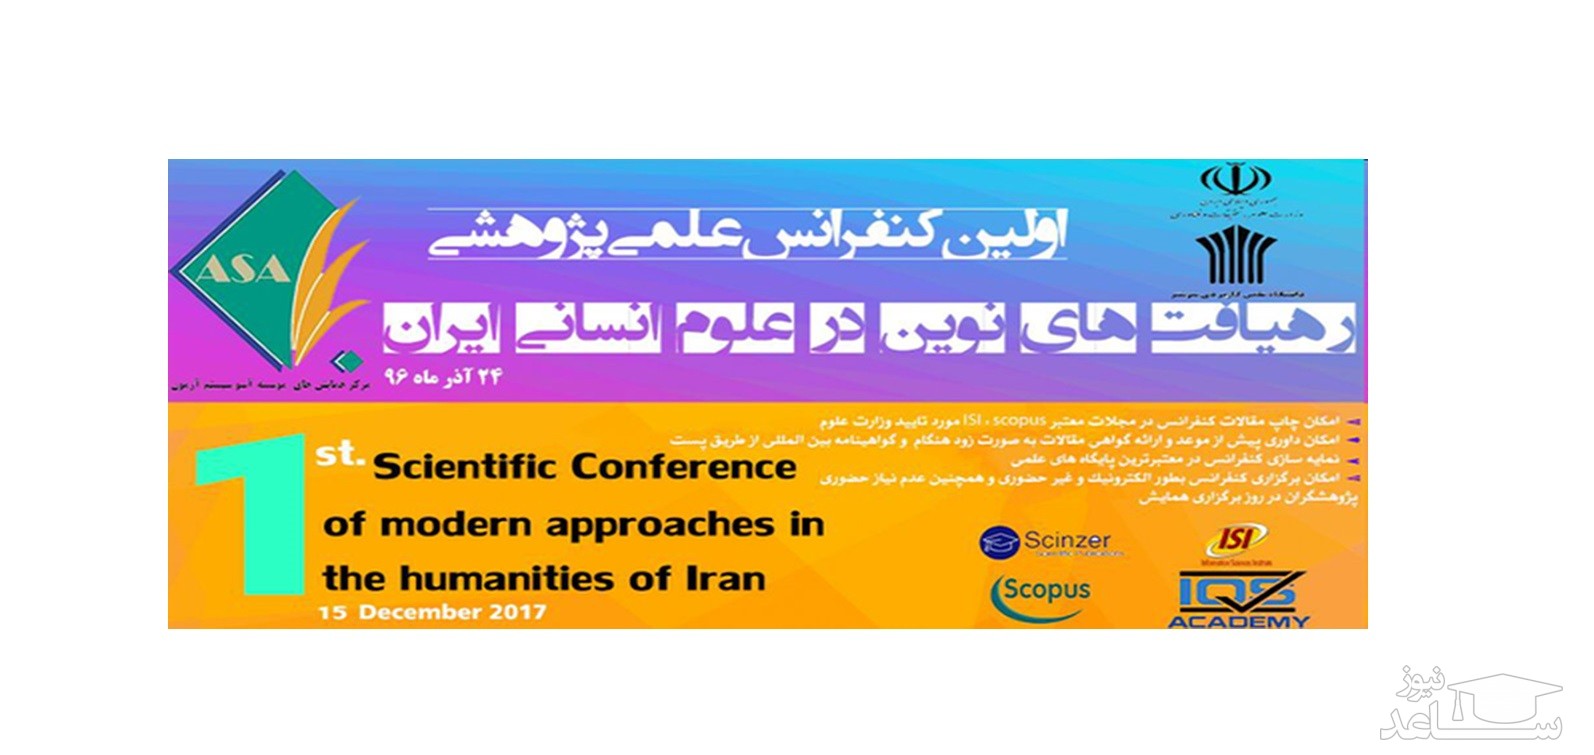 اولین کنفرانس علمی پژوهشی رهیافت های نوین در علوم انسانی ایران